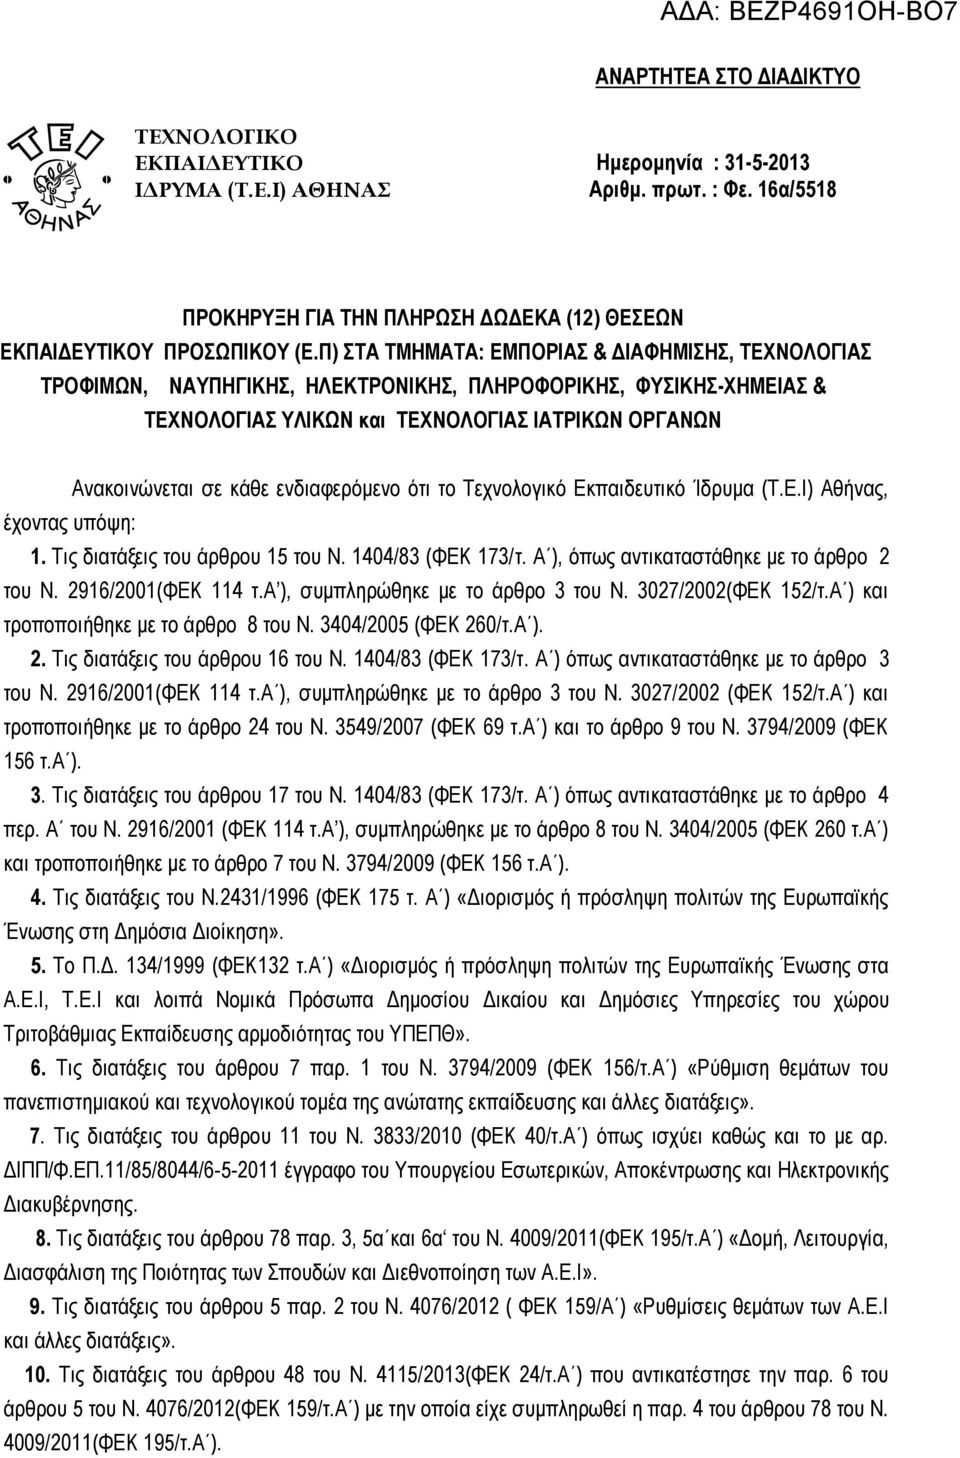 ενδιαφερόμενο ότι το Τεχνολογικό Εκπαιδευτικό Ίδρυμα (Τ.Ε.Ι) Αθήνας, έχοντας υπόψη: 1. Τις διατάξεις του άρθρου 15 του Ν. 1404/83 (ΦΕΚ 173/τ. Α ), όπως αντικαταστάθηκε με το άρθρο 2 του Ν.